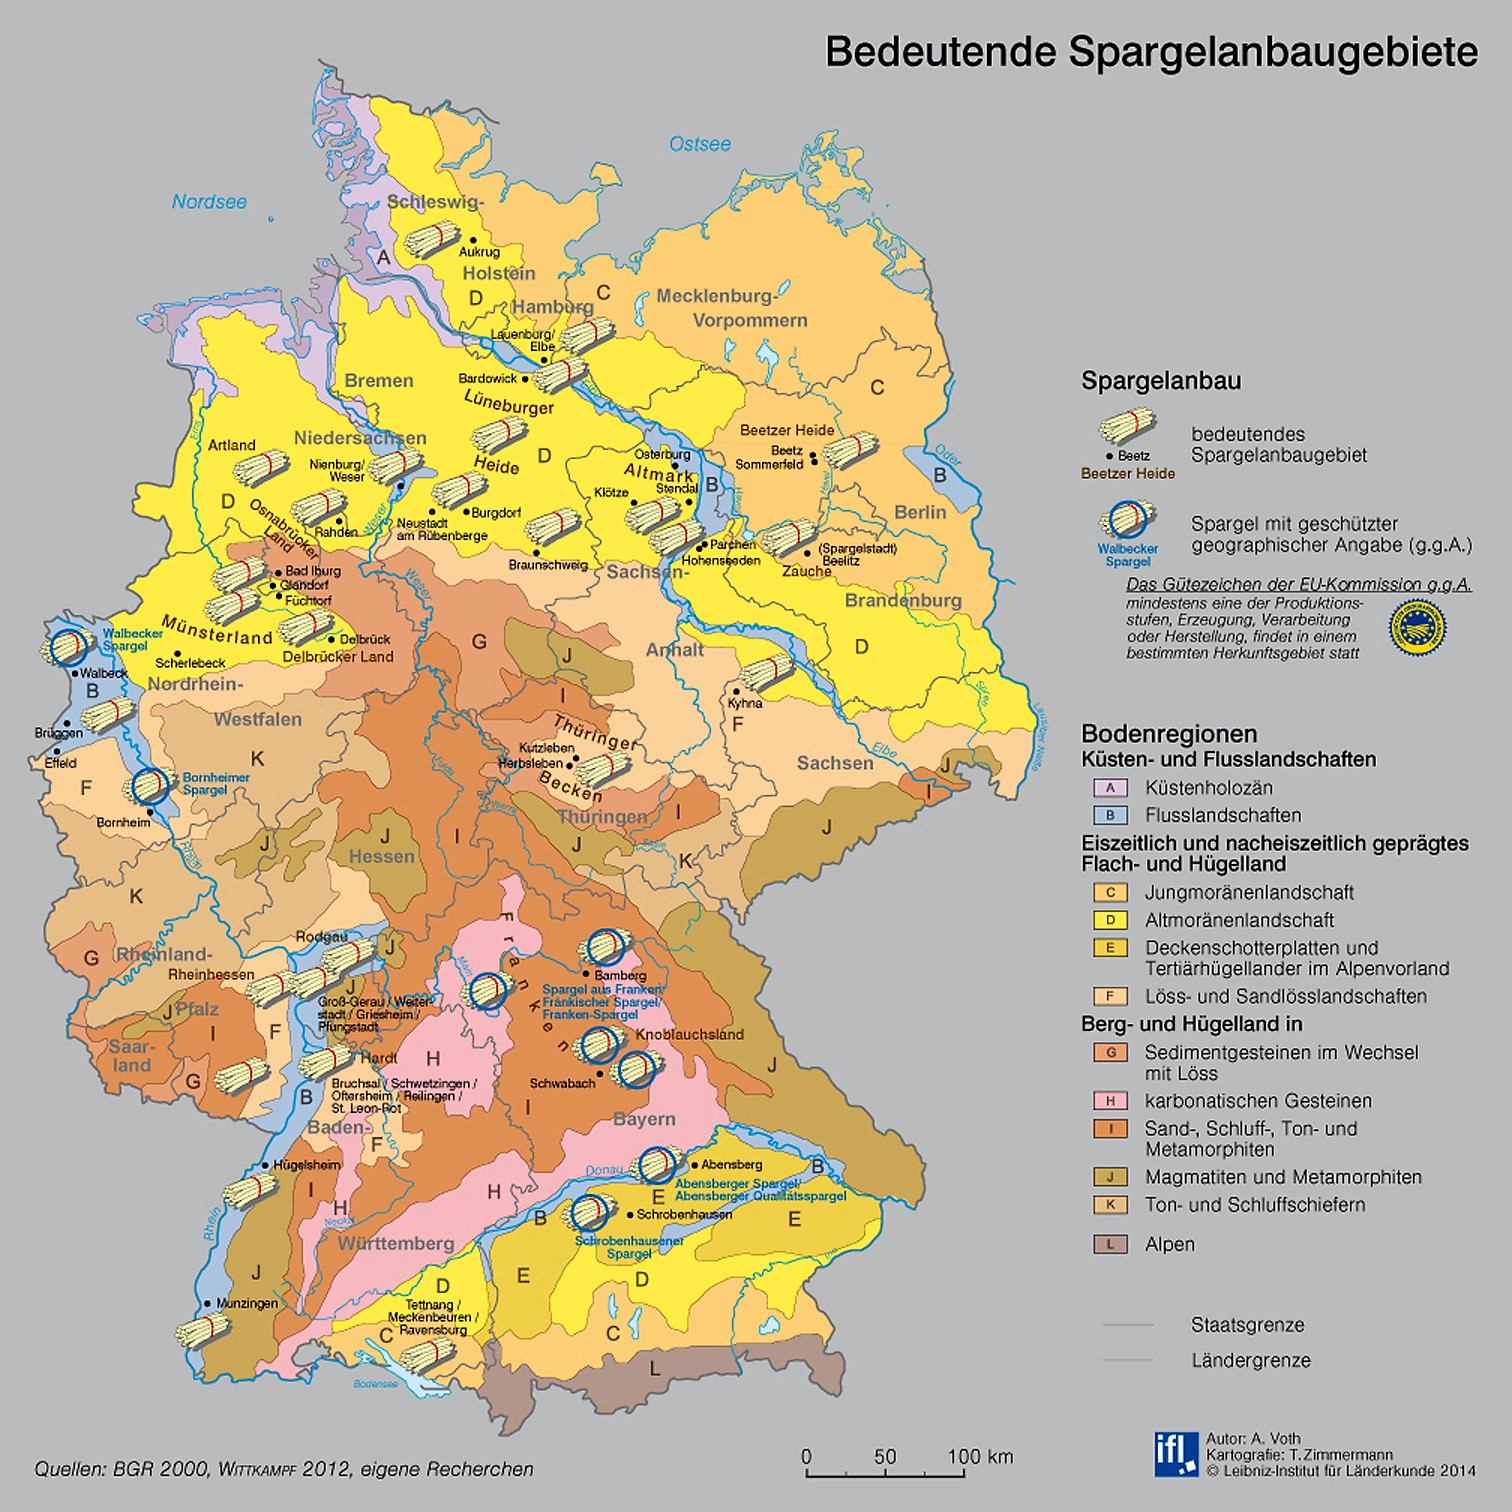 Bedeutende Spargelanbaugebiete in Deutschland